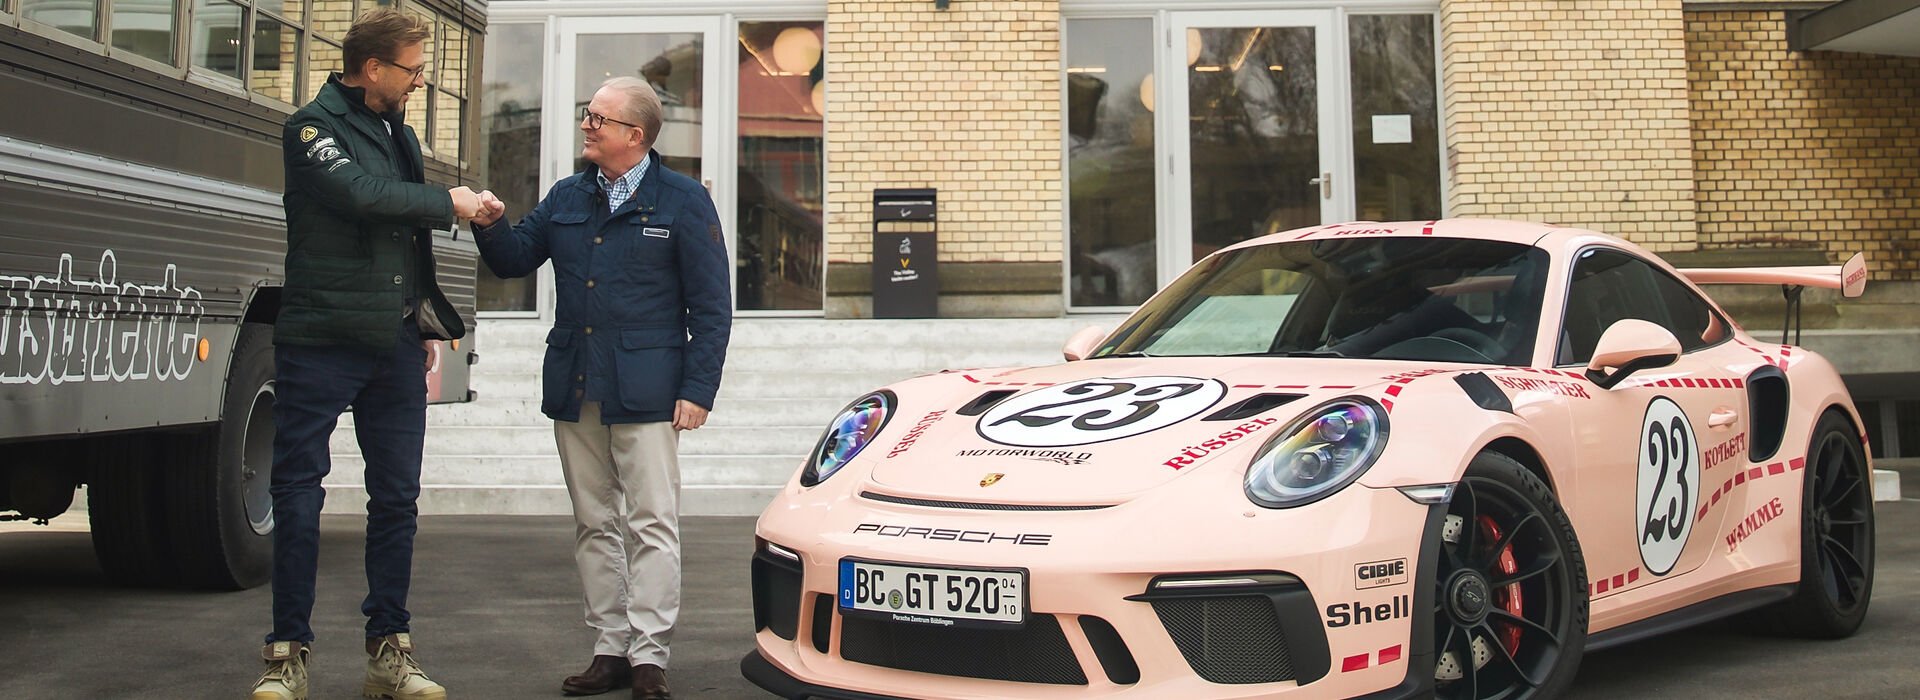 Kooperation Verband Schweizer Porsche Clubs / auto-illustrierte